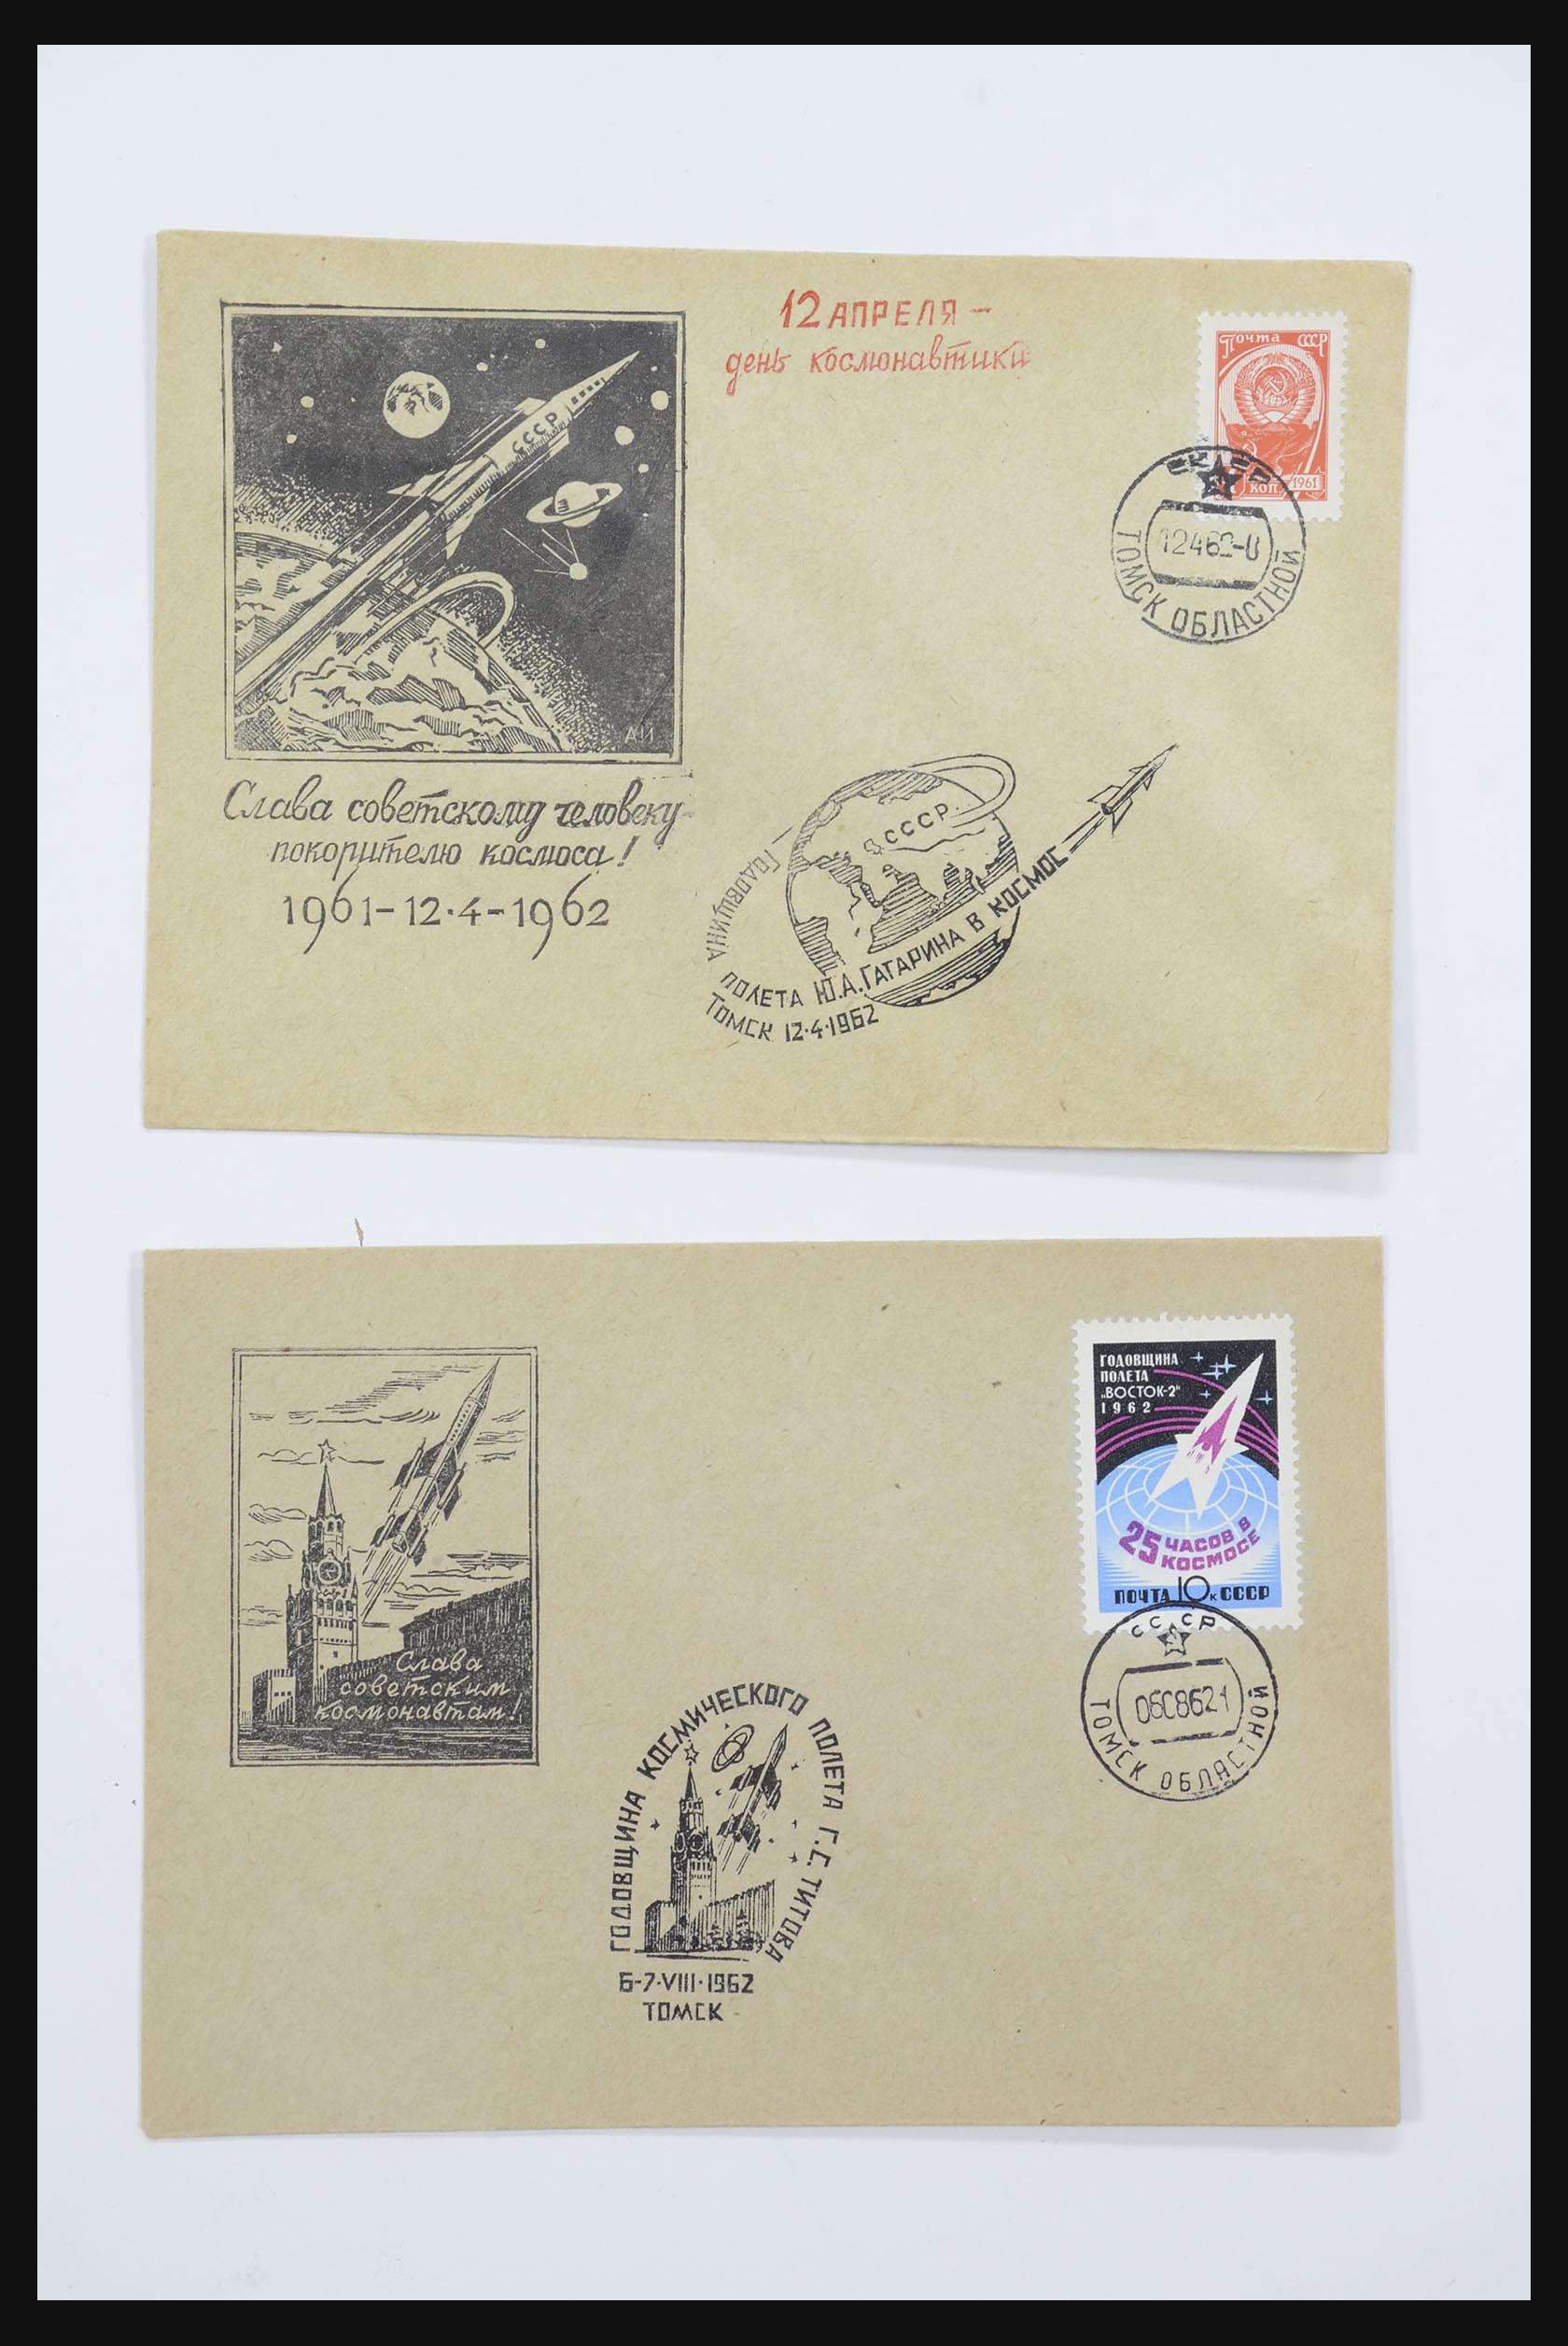 31605 0056 - 31605 Rusland postwaardestukken jaren 50-60.